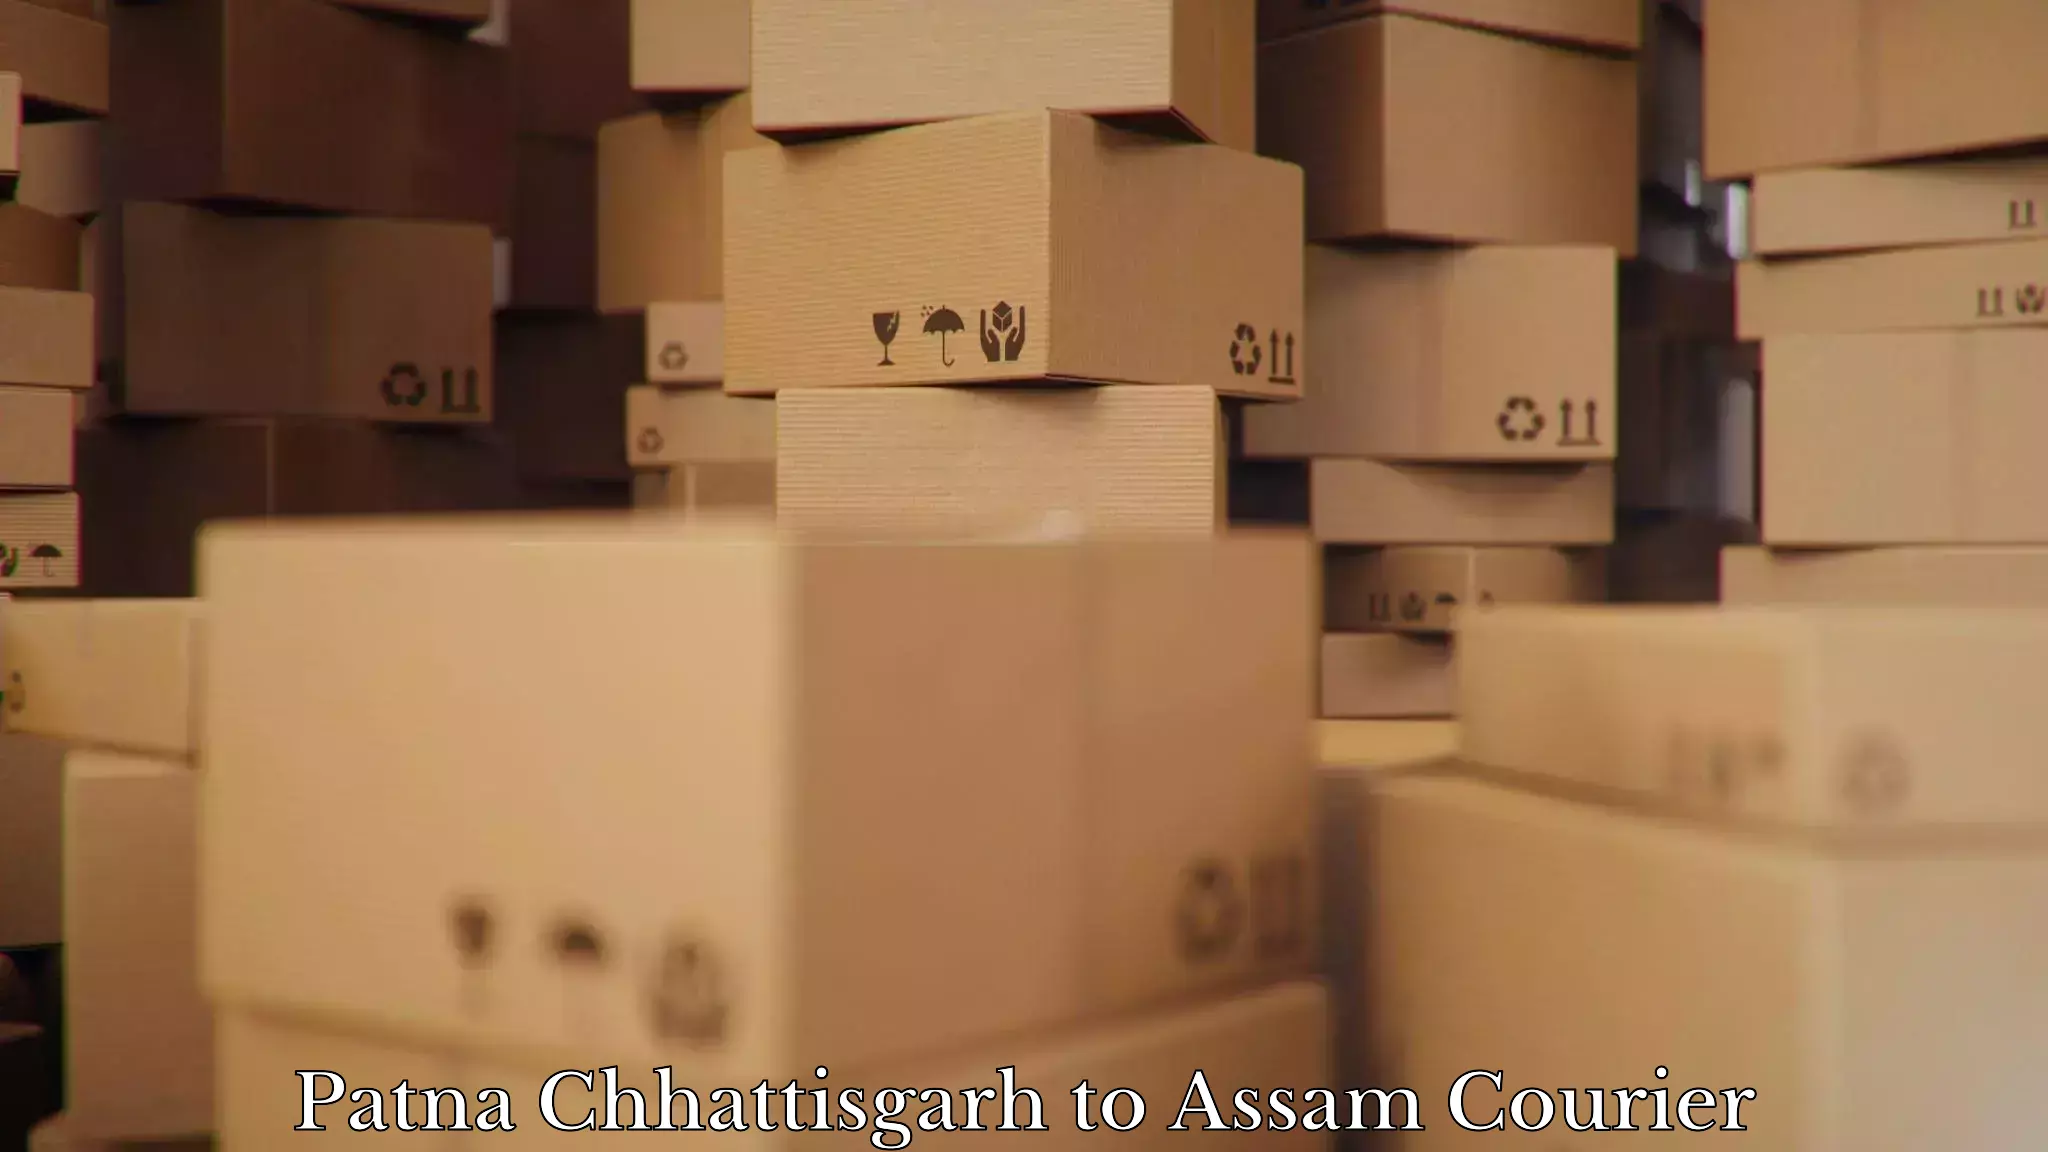 Furniture shipping services Patna Chhattisgarh to Khetri